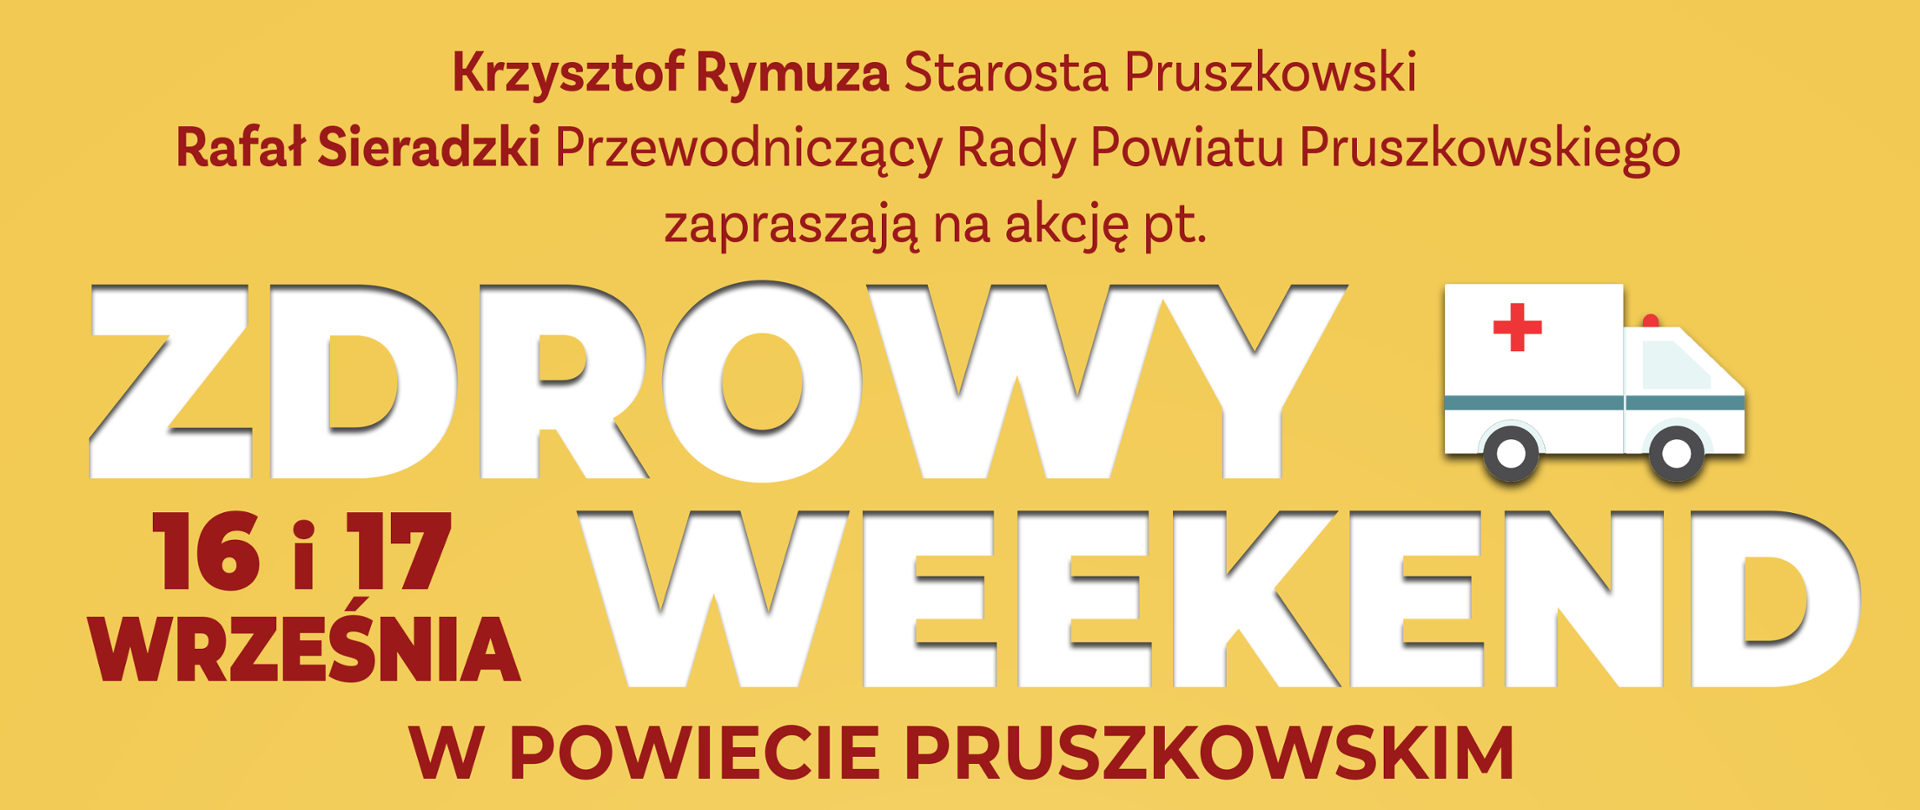 Zdrowy weekend w powiecie pruszkowskim